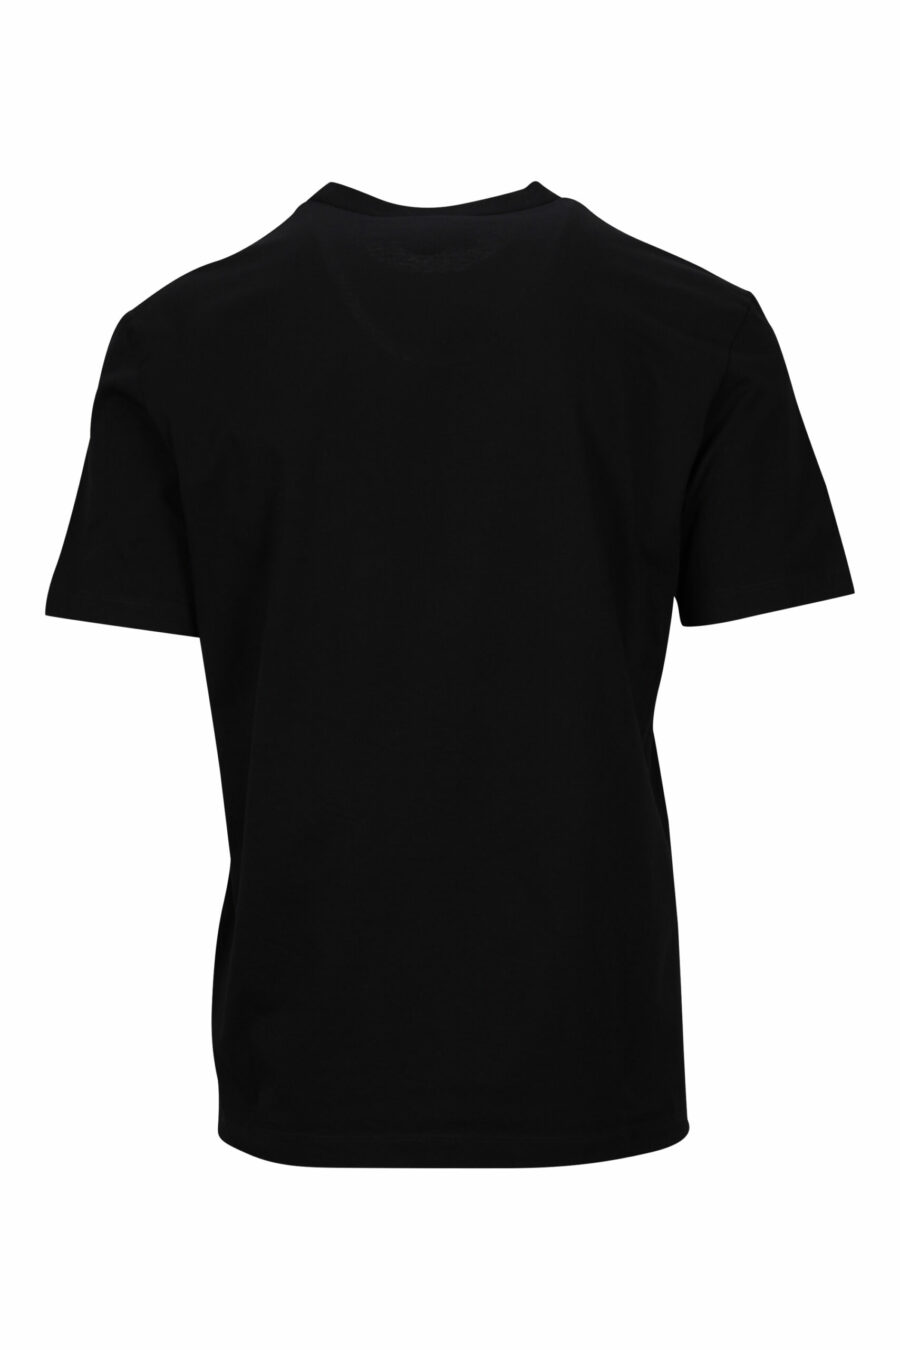 Camiseta negra con maxilogo hoja monocromático en relieve - 8054148265908 1 scaled